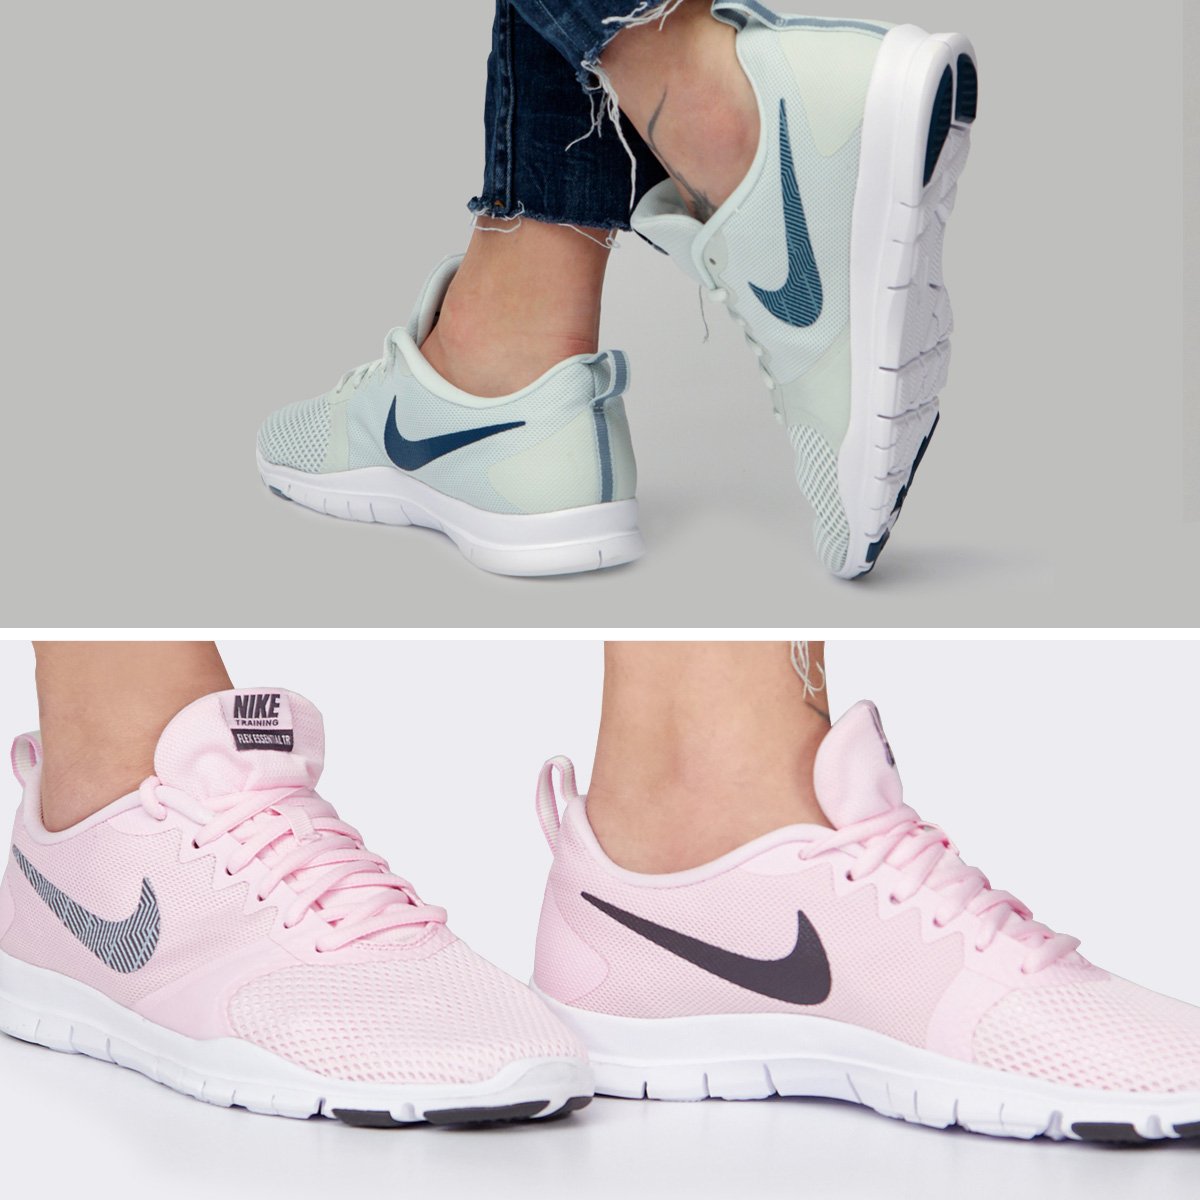 Repetido entrevista exagerar Zacaris.com в Twitter: „Zapatillas de entrenamiento Nike Flex Essential,  ideales para realizar ejercicios ligeros como para el día a día ¿Qué color  te gusta más? #zacaris #newin #ss19 #shoponline Ver &gt;&gt;  https://t.co/CZ3g87EYAd